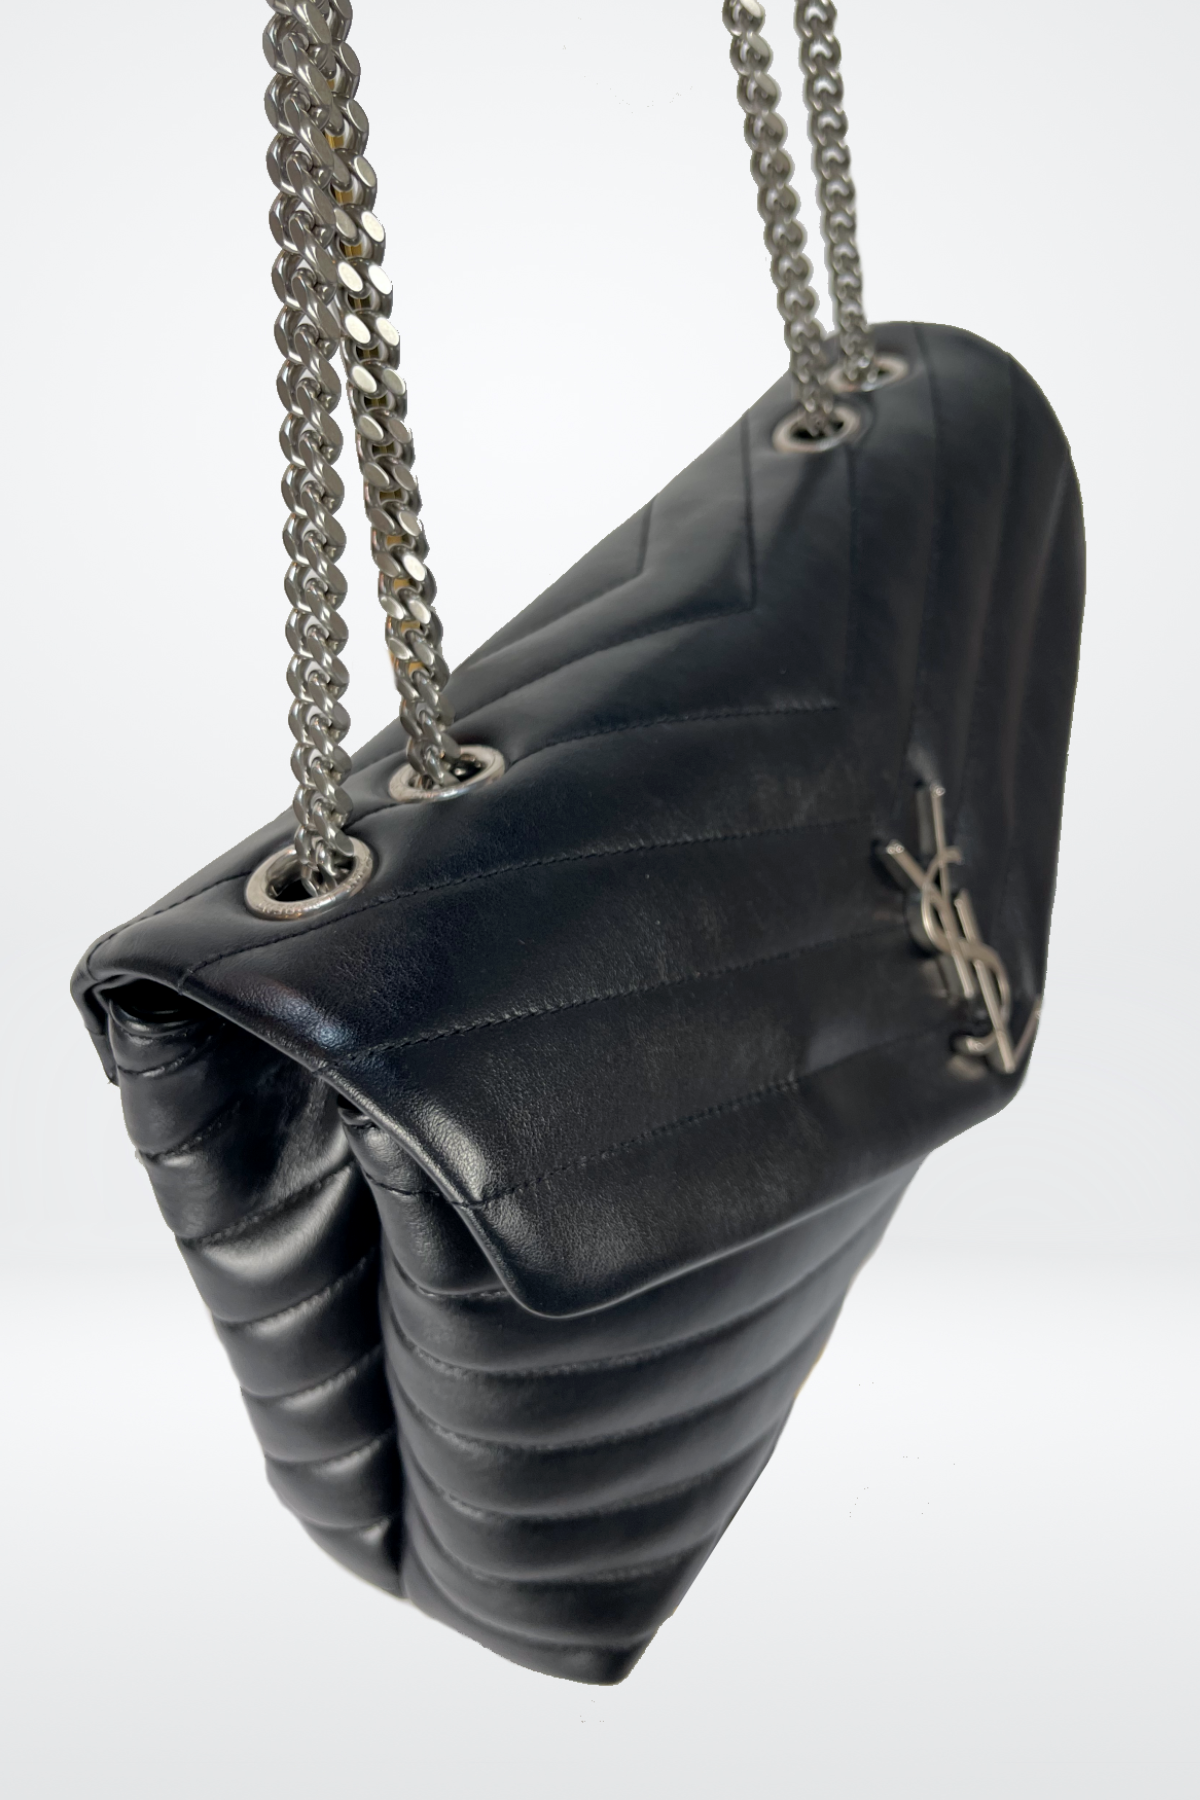 Saint Laurent Loulou Silver Hardware Shoulder Bag Medium Black Leather